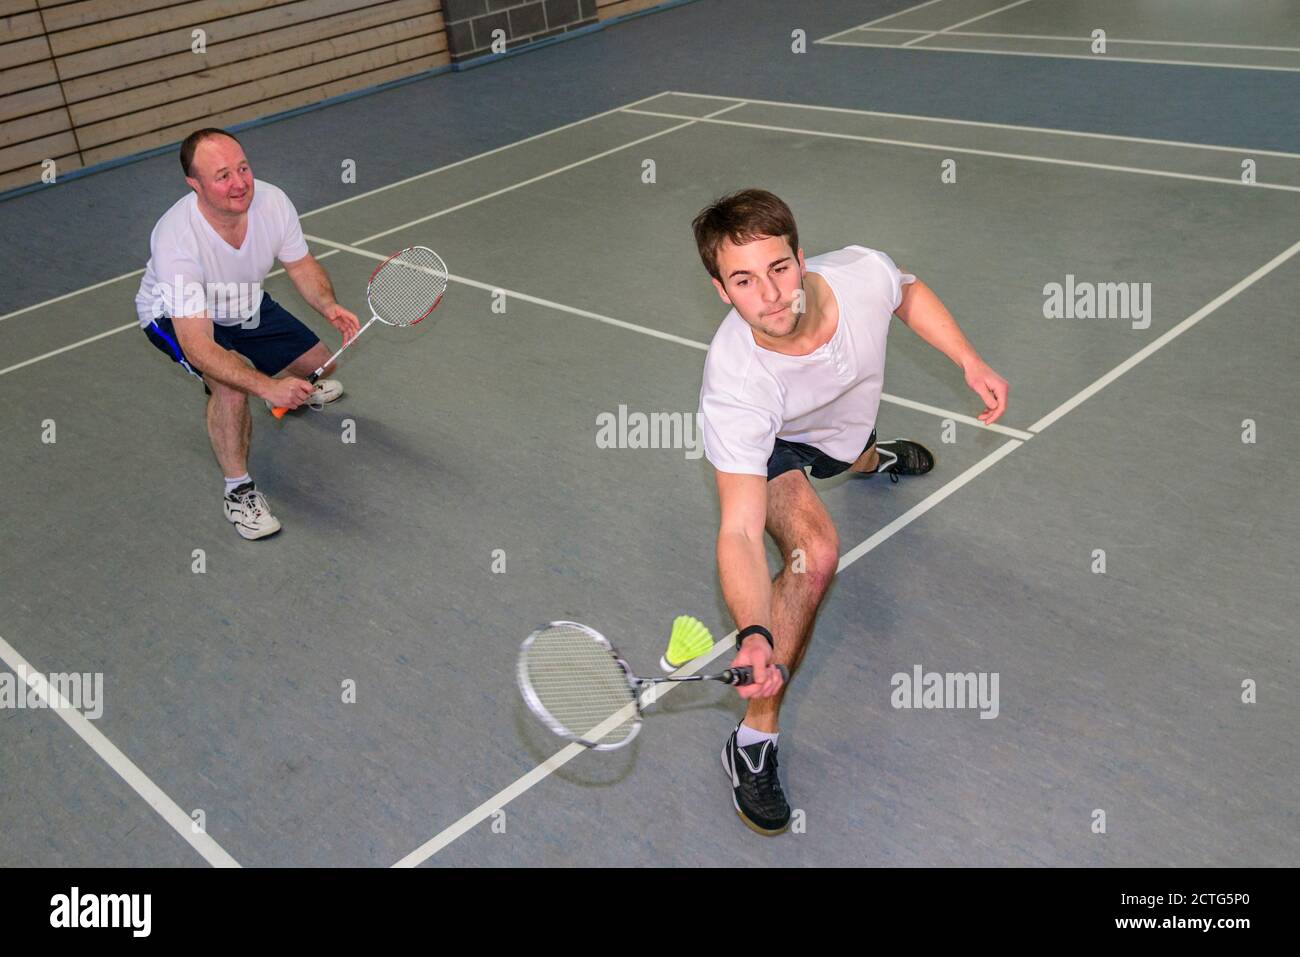 Action und Einsatz beim Badminton Stock Photo